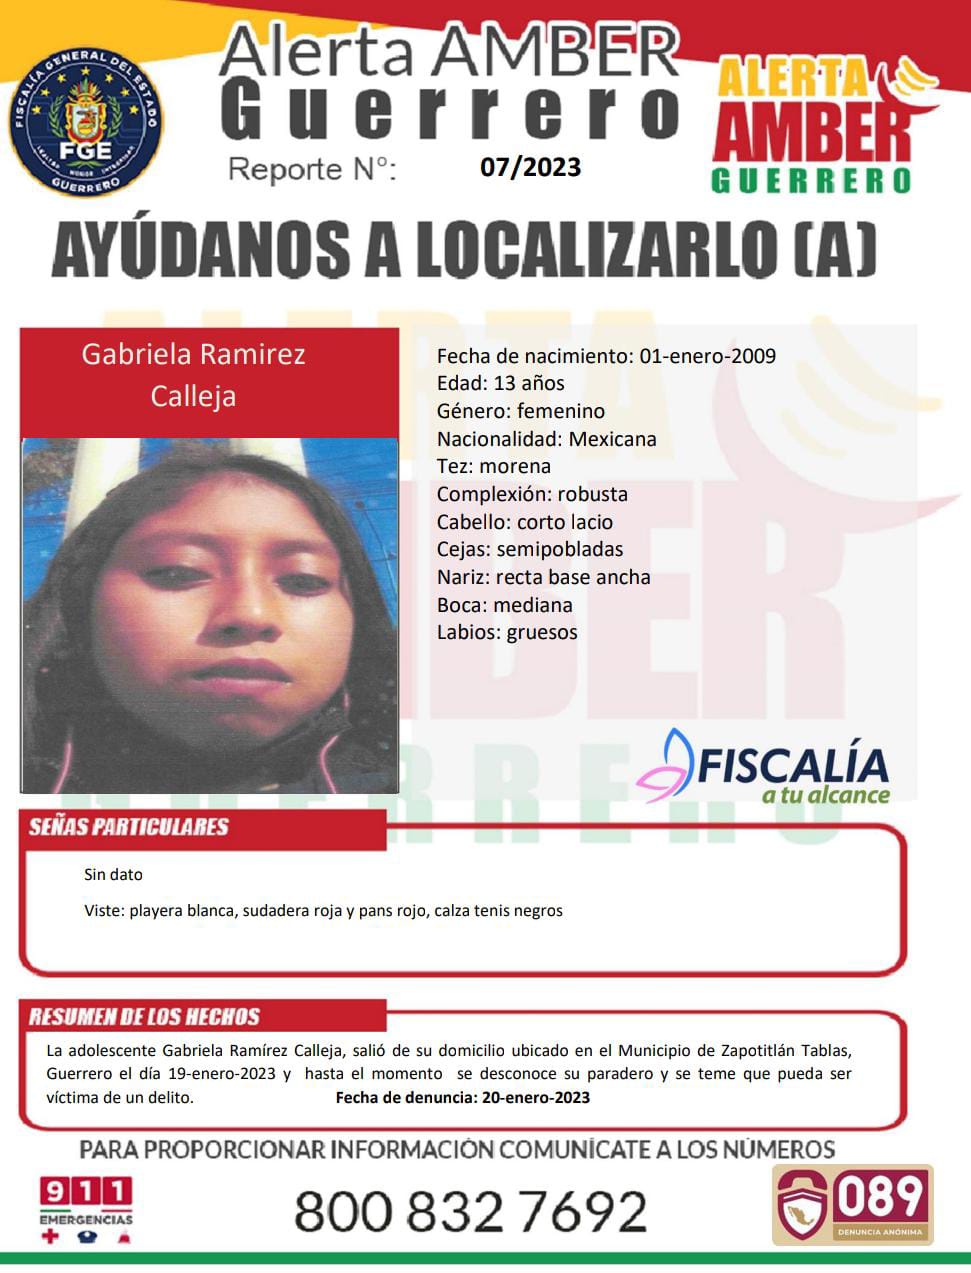 Fiscalía General Del Estado Solicita Su Colaboración Para Localizar A Gabriela Ramírez Calleja.